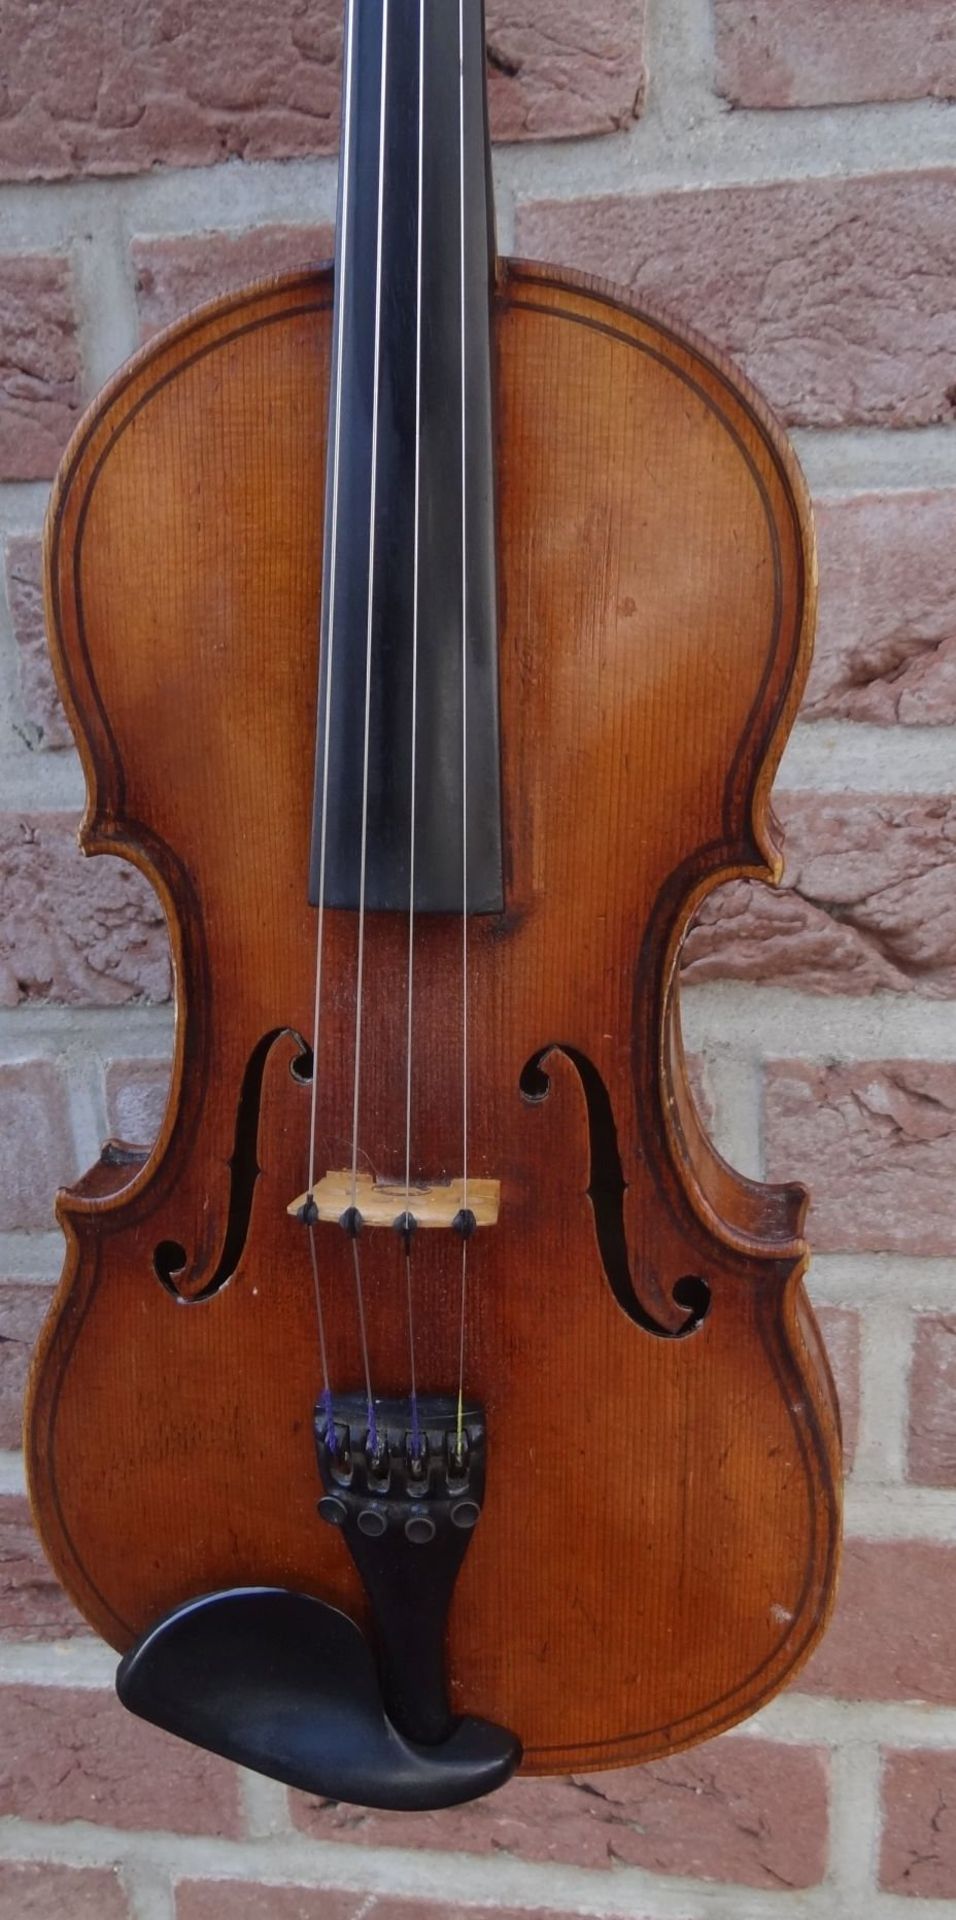 alte Geige im Koffer, innen Etikett "Ciovan Paolo Meggine", 19/20 Jhd?, L-62 cm, gut erhalten - Bild 5 aus 10